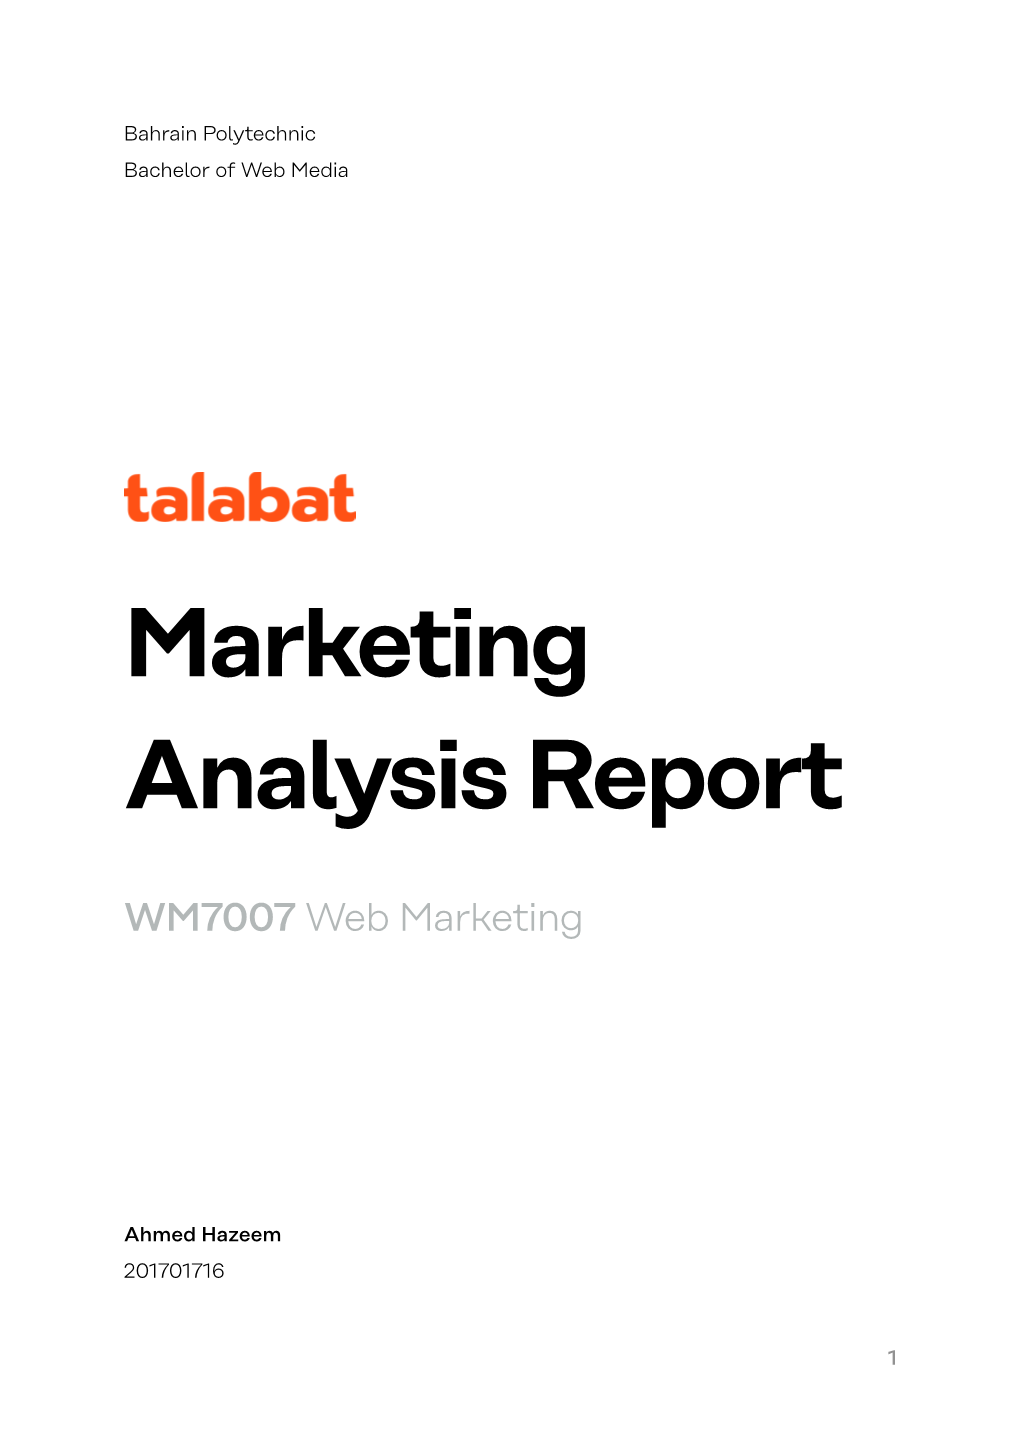 Marketing Analysis Report